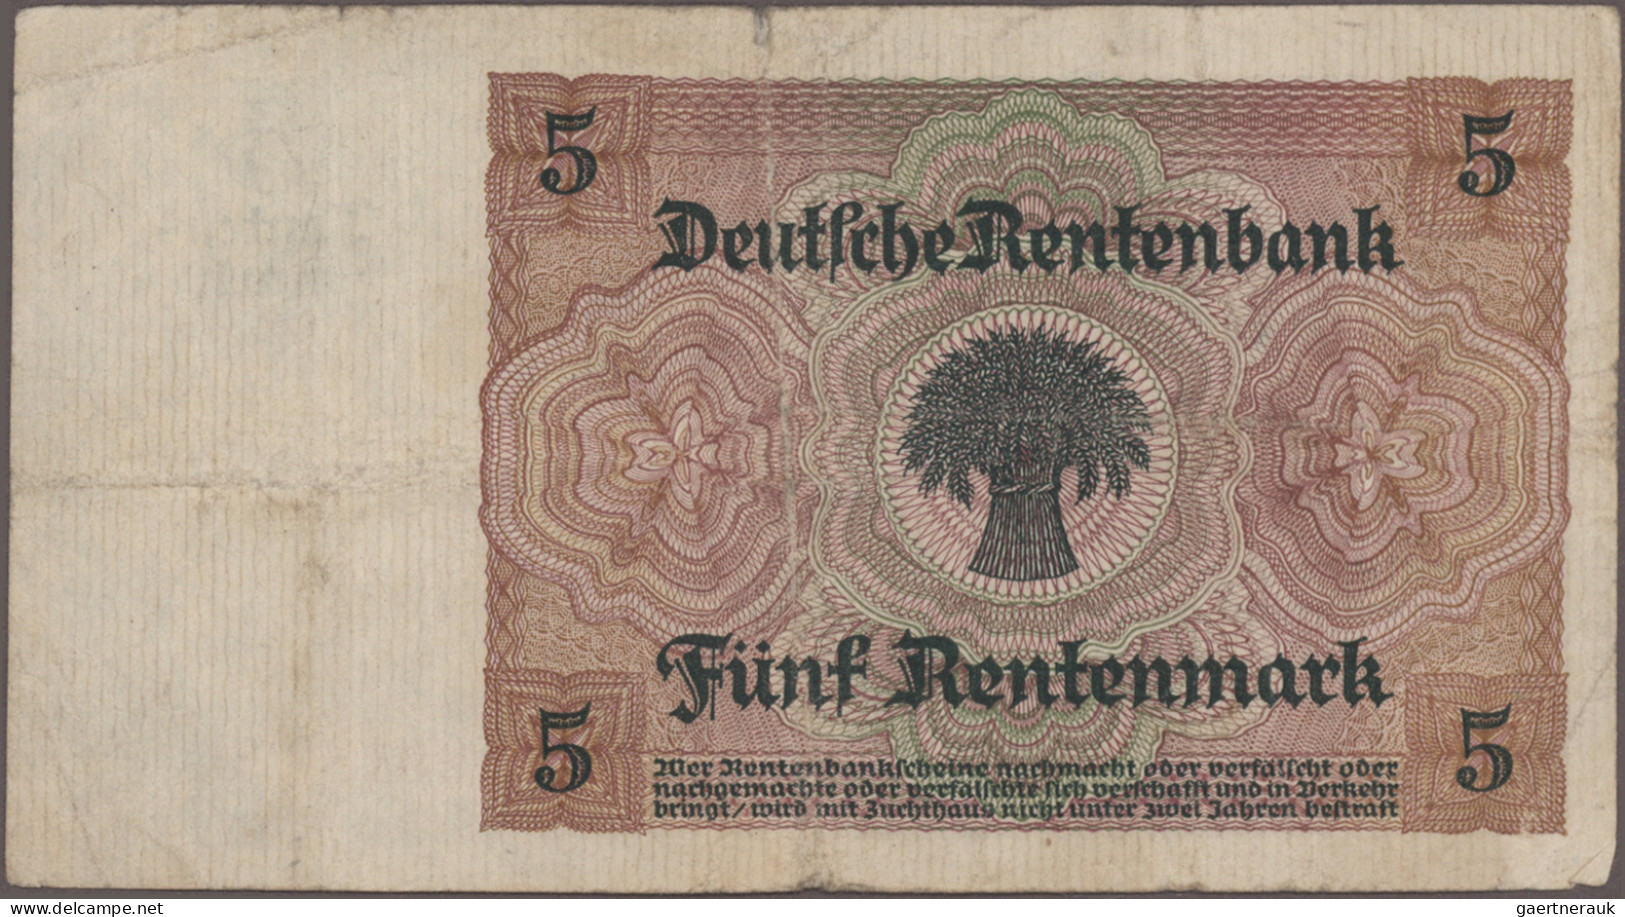 Deutschland - Deutsches Reich bis 1945: Lot mit 77 Banknoten Deutsches Reich ab